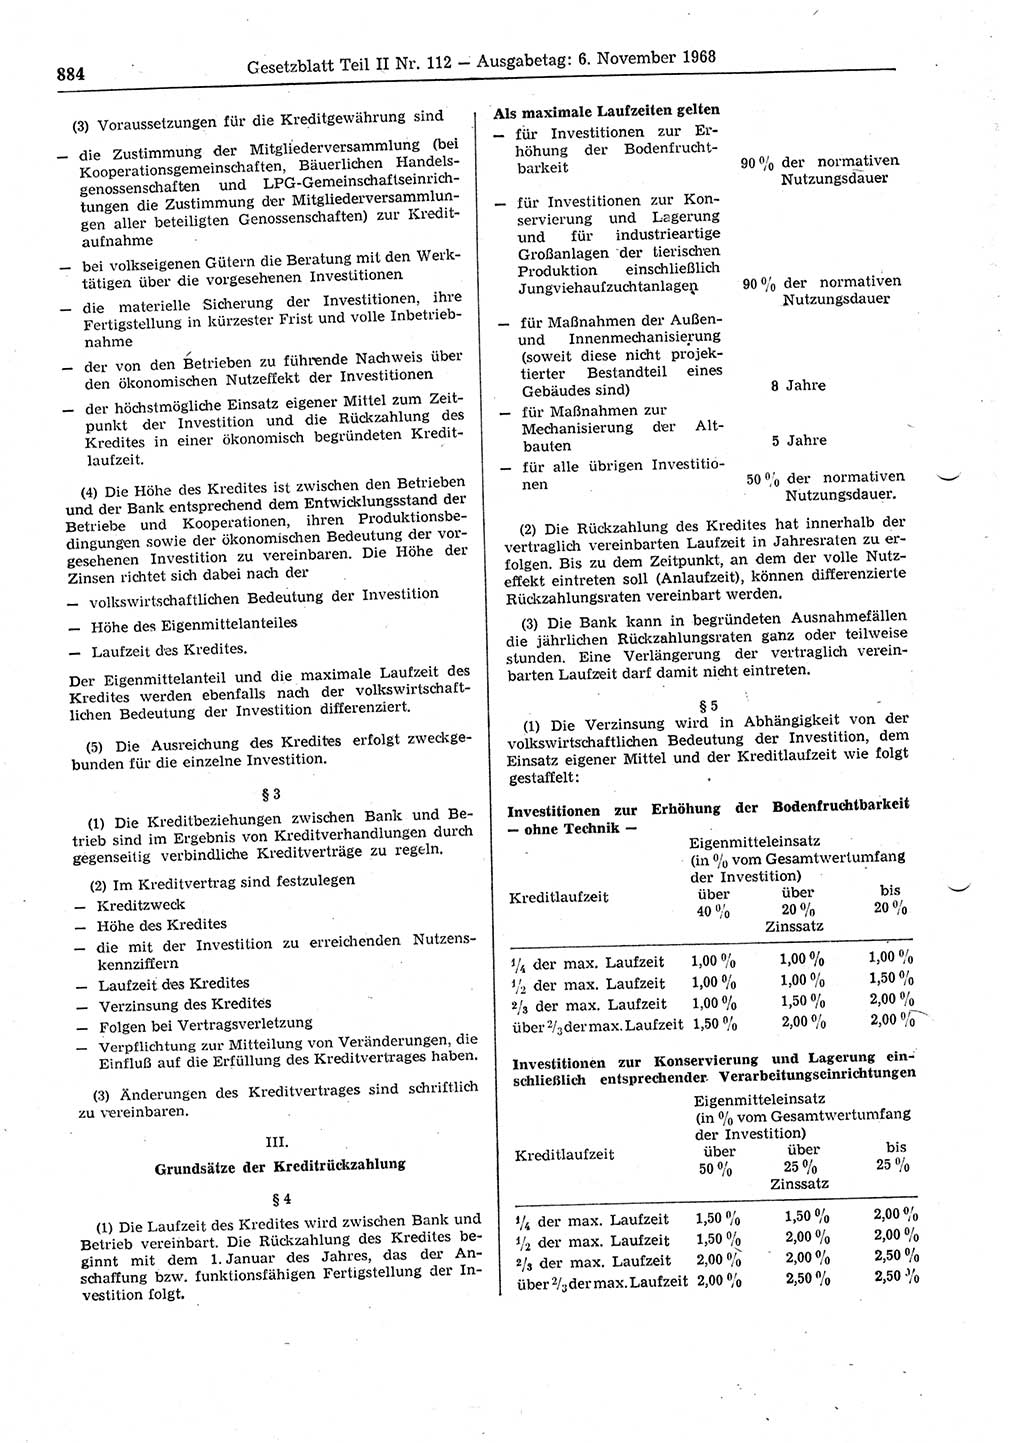 Gesetzblatt (GBl.) der Deutschen Demokratischen Republik (DDR) Teil ⅠⅠ 1968, Seite 884 (GBl. DDR ⅠⅠ 1968, S. 884)